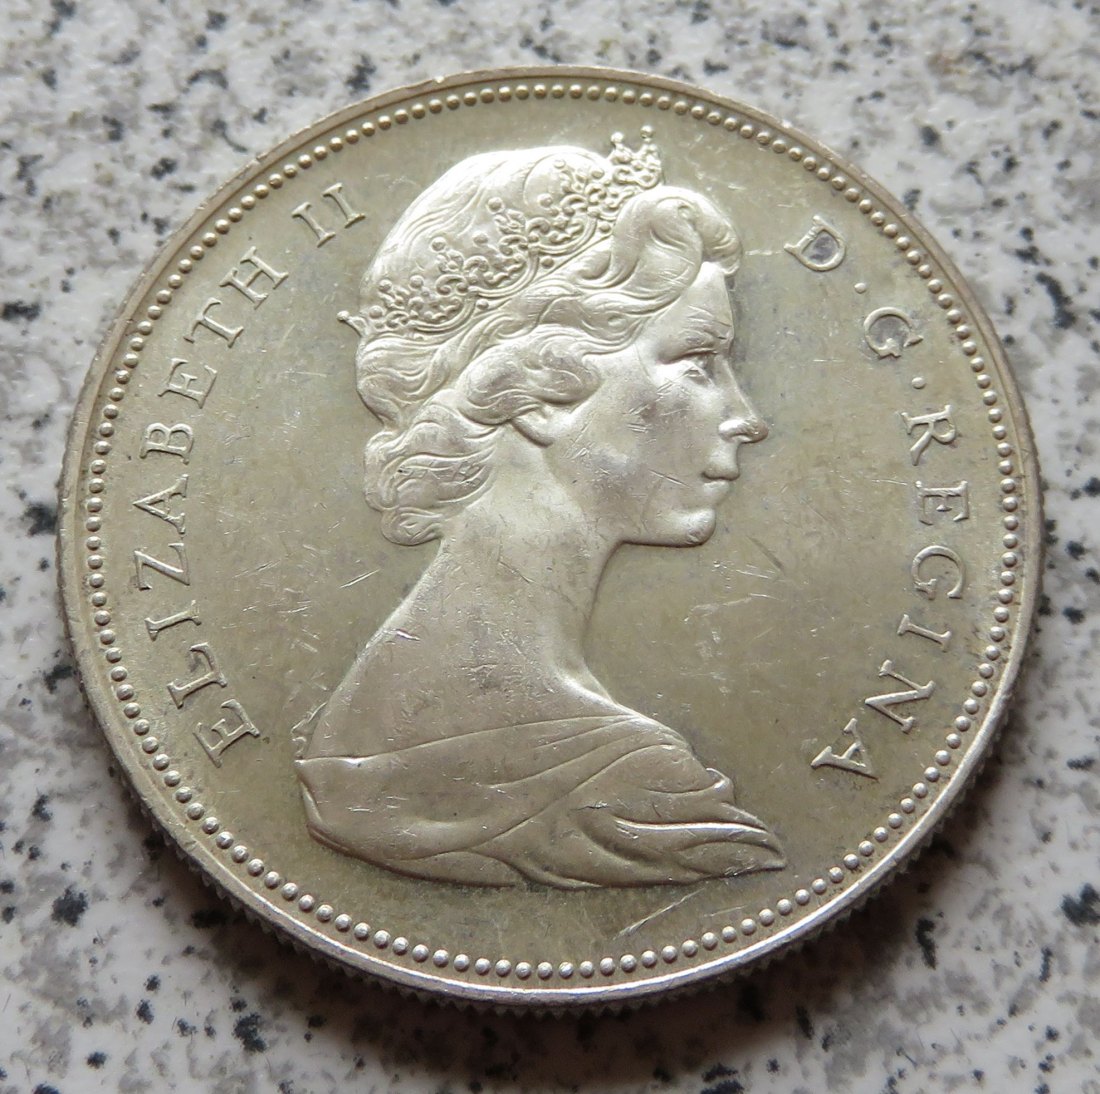  Canada 1 Dollar 1966   